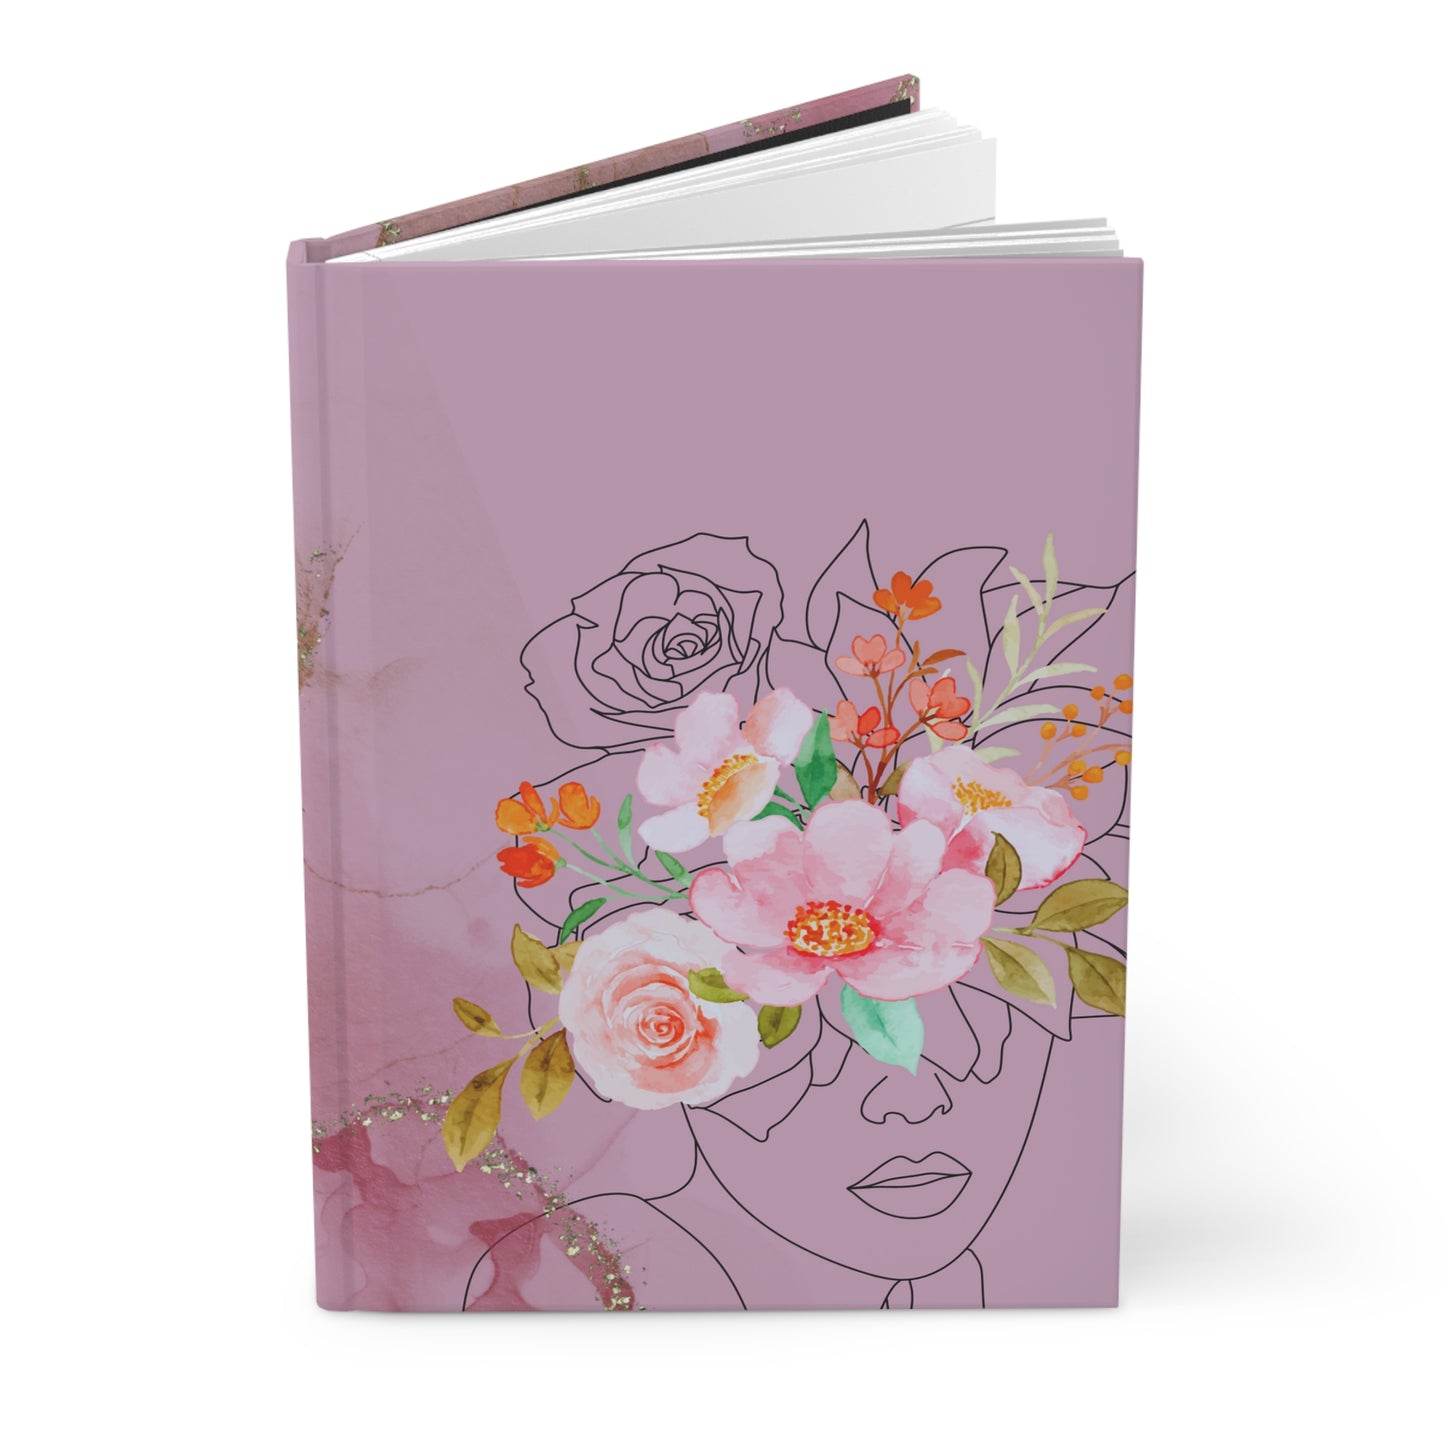 Flower Beauty Journal, Beautiful Journal, Cute Design Journal, Personal Journal, Flower Journal, Woman Journal, Hardcover Journal Matte